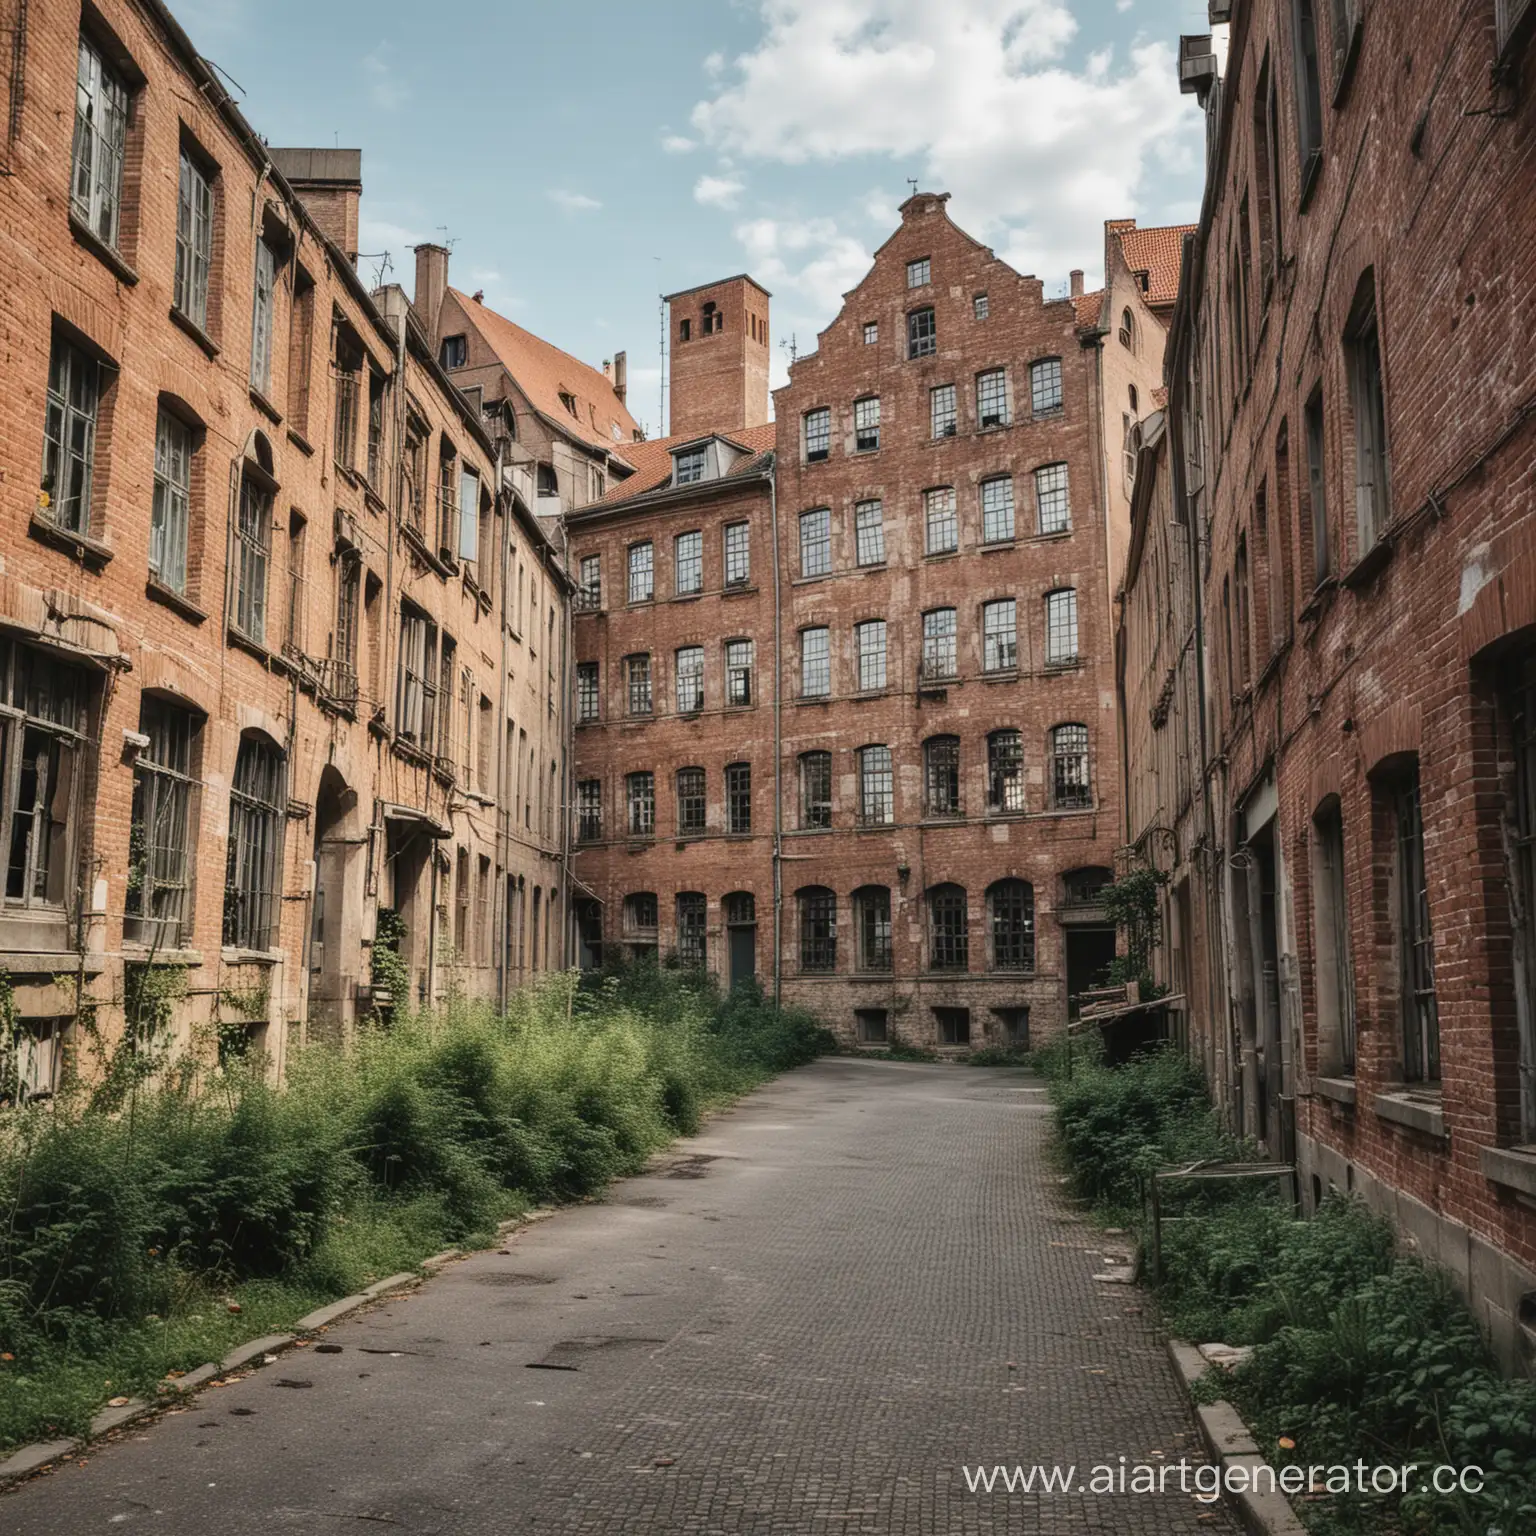 Город в Германии с памятниками истории и культуры, но они обветшали, со старыми заводами и фабриками и старыми пятиэтажными домами